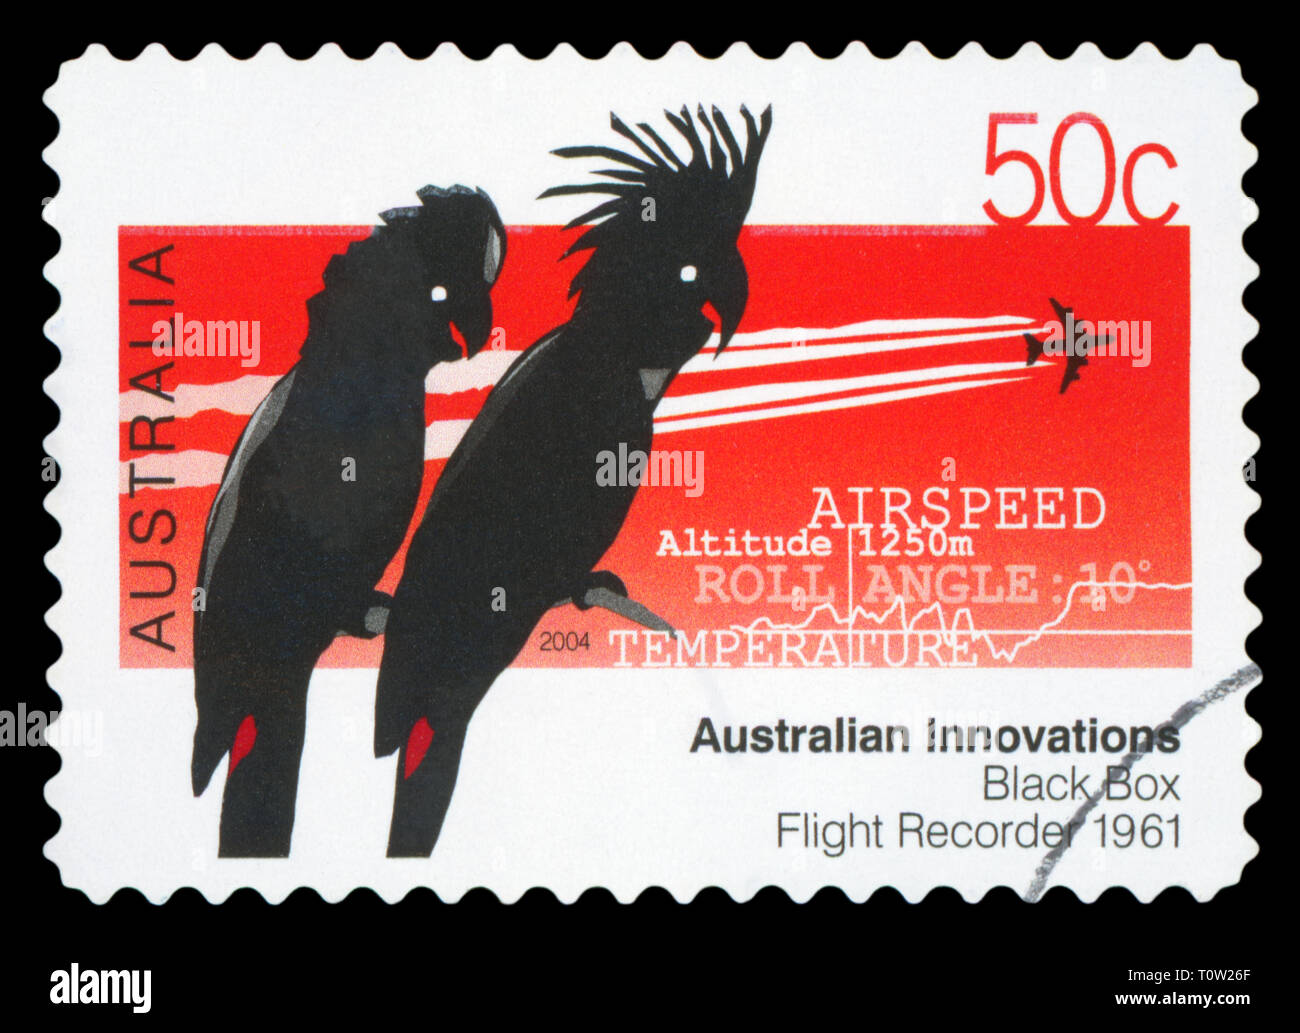 AUSTRALIA - circa 2004: utiliza una estampilla postal de Australia,  celebrando las innovaciones australianas - la caja negra registrador de  vuelo, circa 2004 Fotografía de stock - Alamy